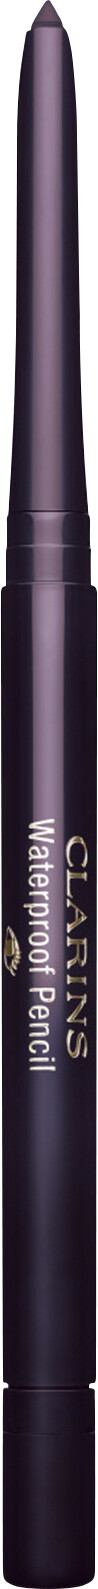 Clarins Waterproof Eye Pencil 0.29g 04 - Fig